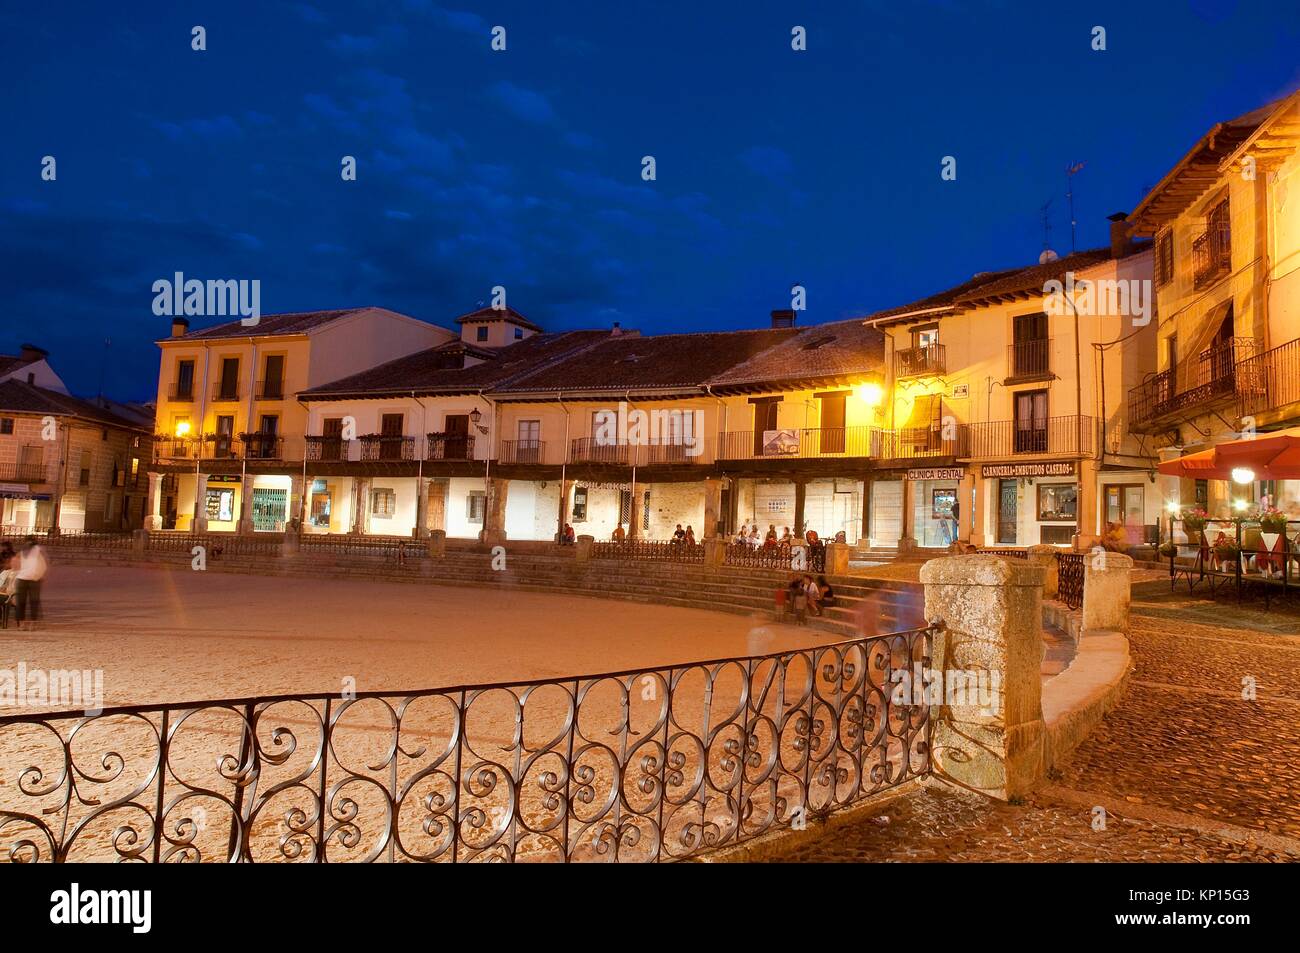 Main Square, night view. Riaza, Segovia province, Castile Leon, Spain. Stock Photo